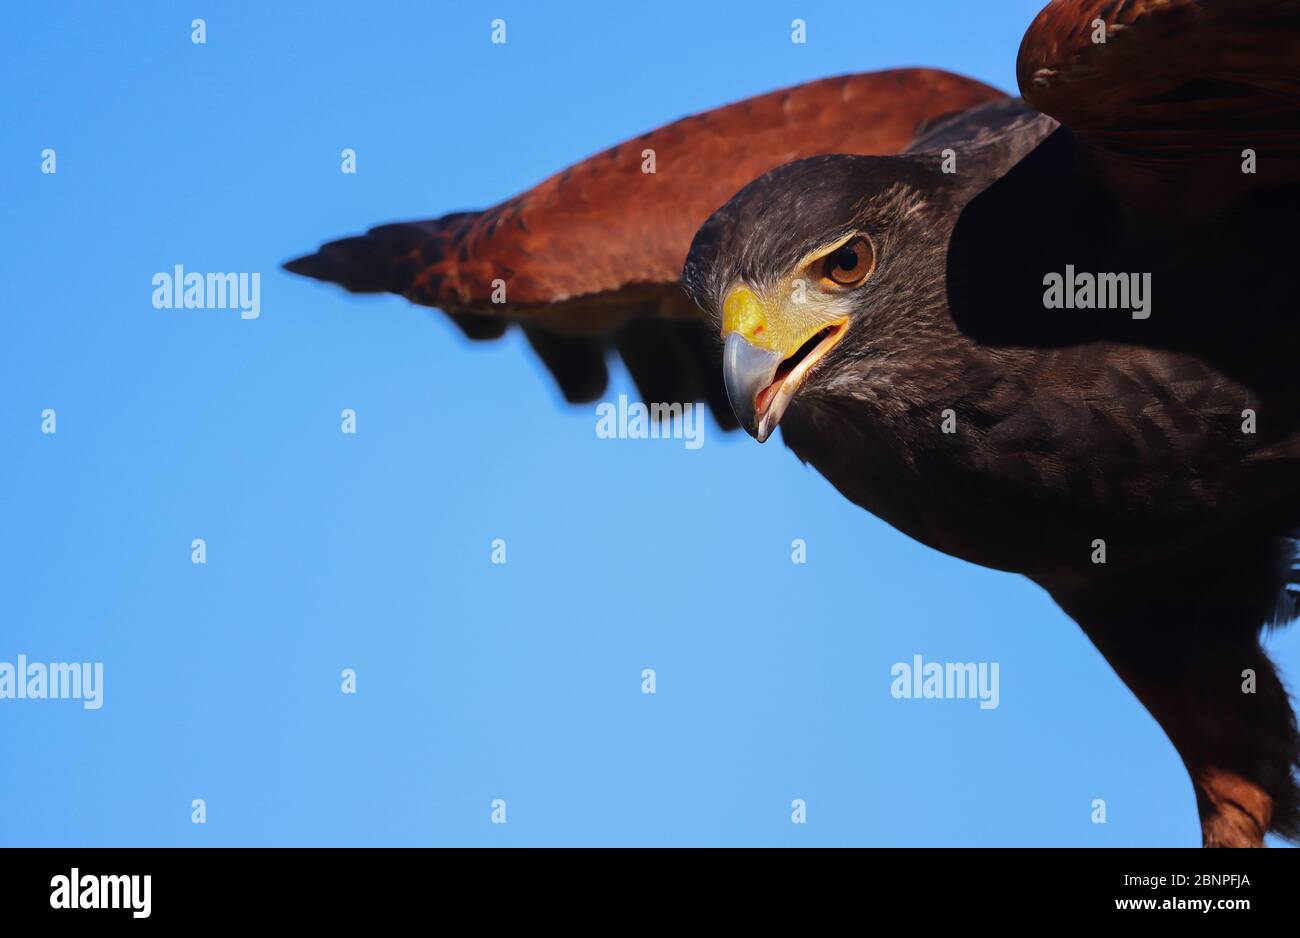 Gros plan sur un Harris's Hawk qui est sur le point de voler, aile étendue; brun foncé avec des épaules châtaignes, œil intense, ciel bleu. Copier l'espace. Bloc congés 1/2 Banque D'Images